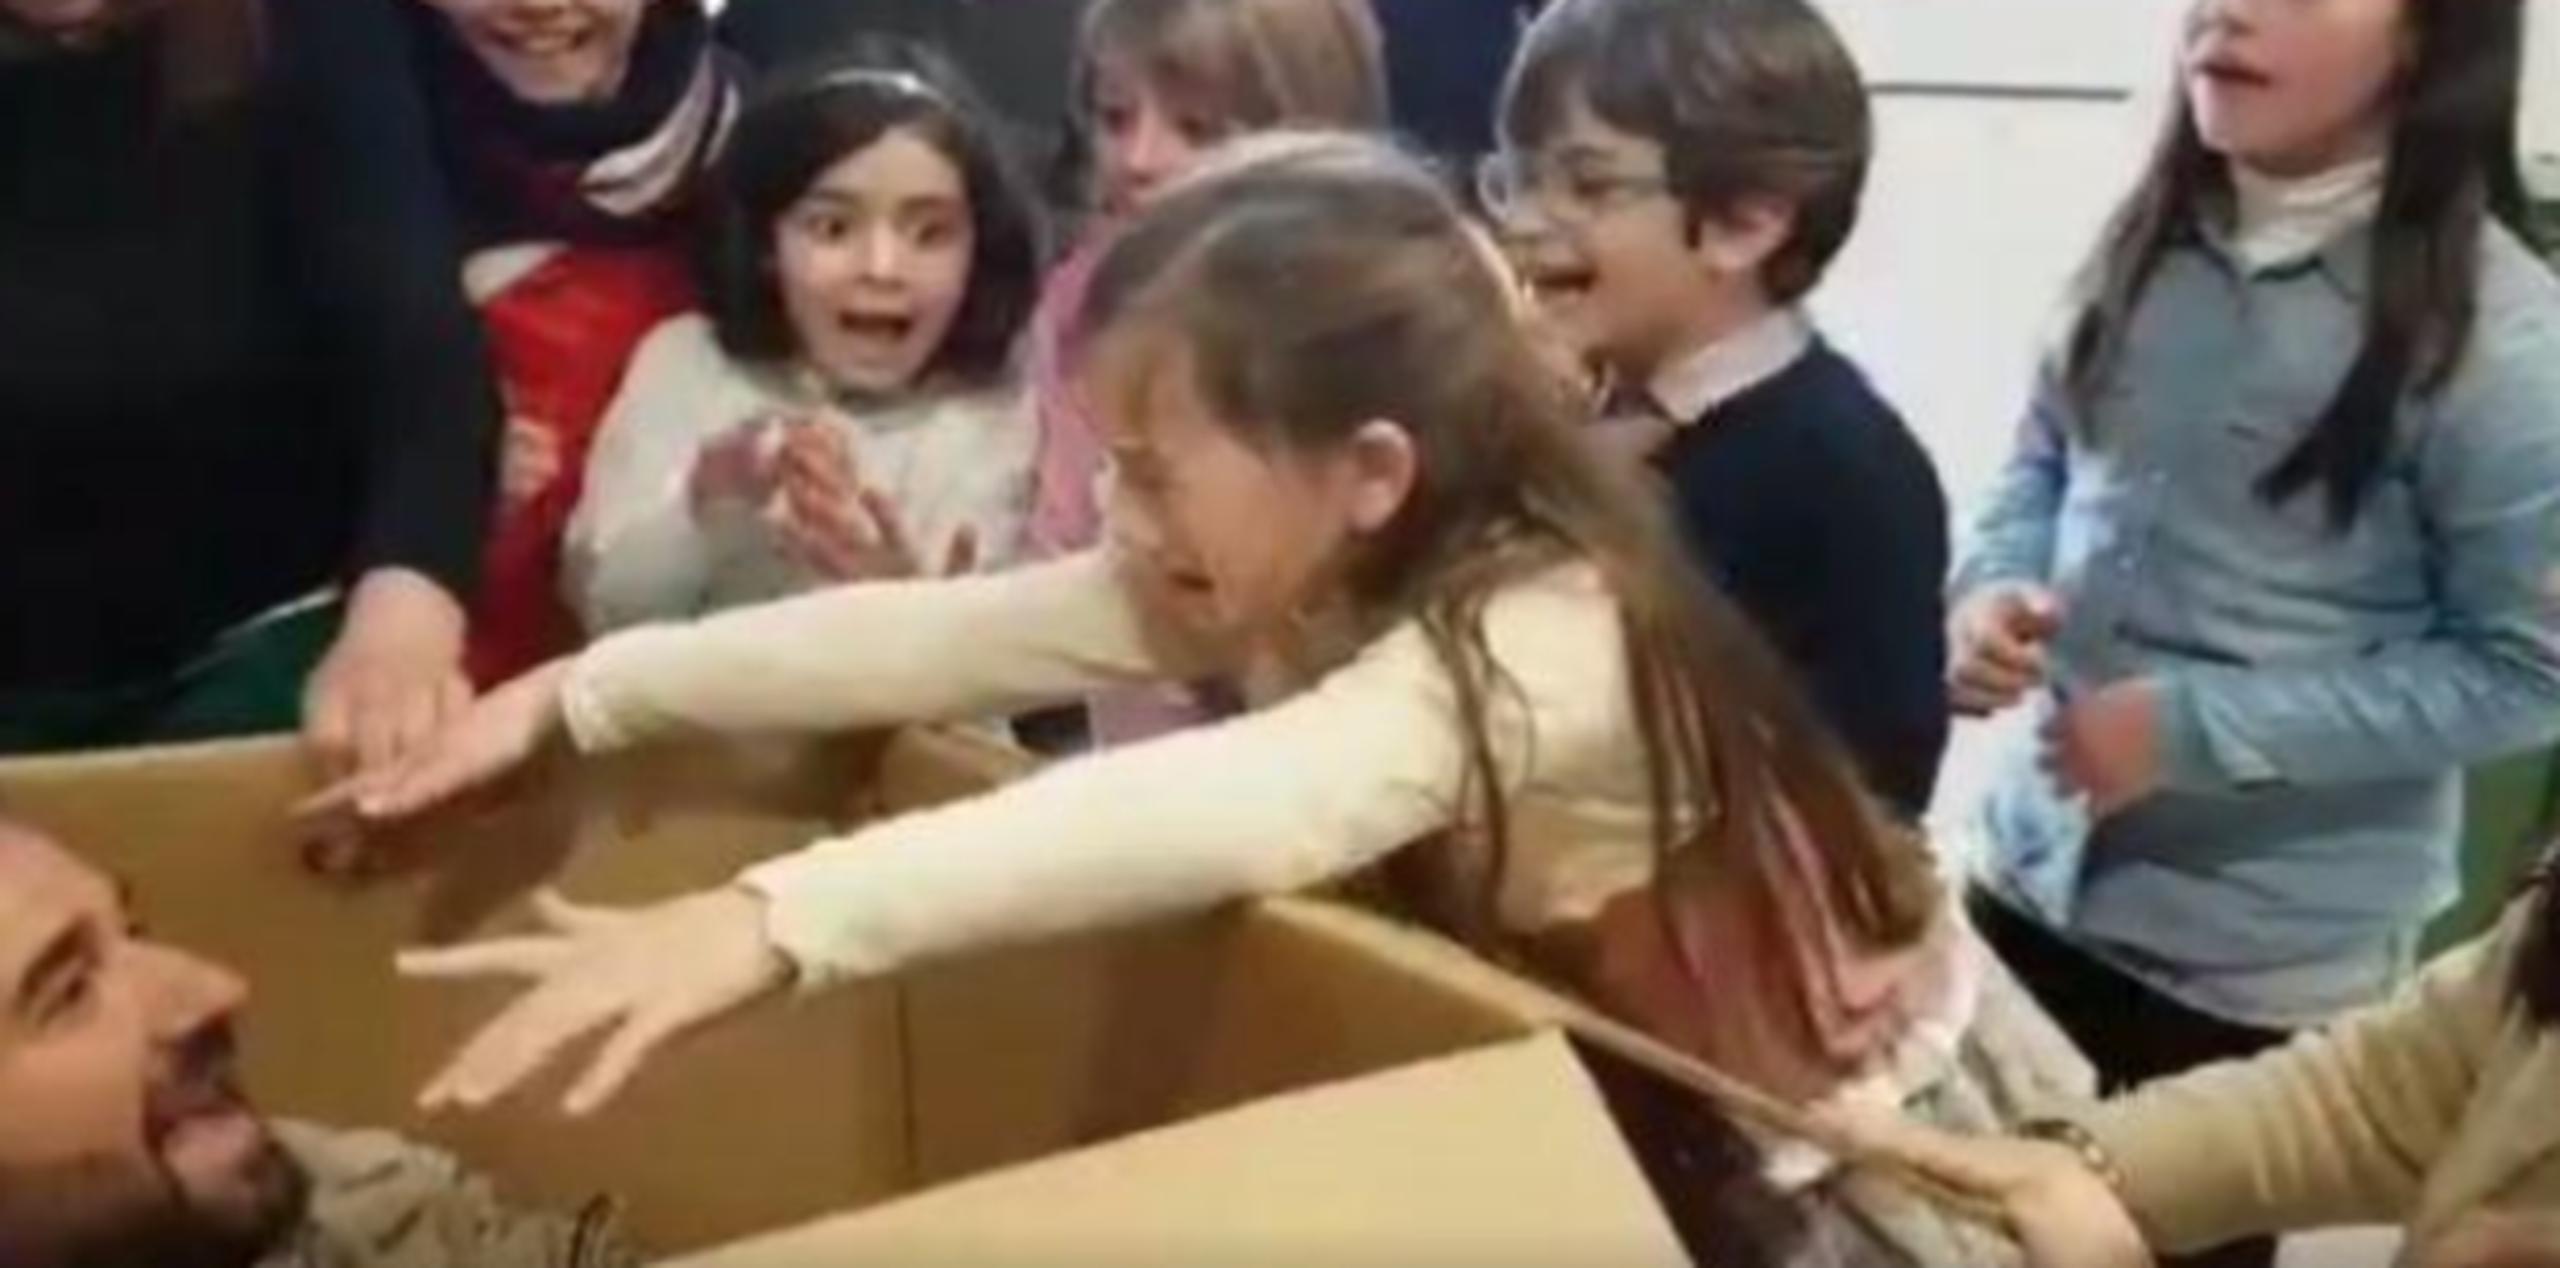 La pequeña se acercó y, tras romper el papel y abrir la caja, se abalanzó sobre su padre y estalló en llanto. (Captura / YouTube)